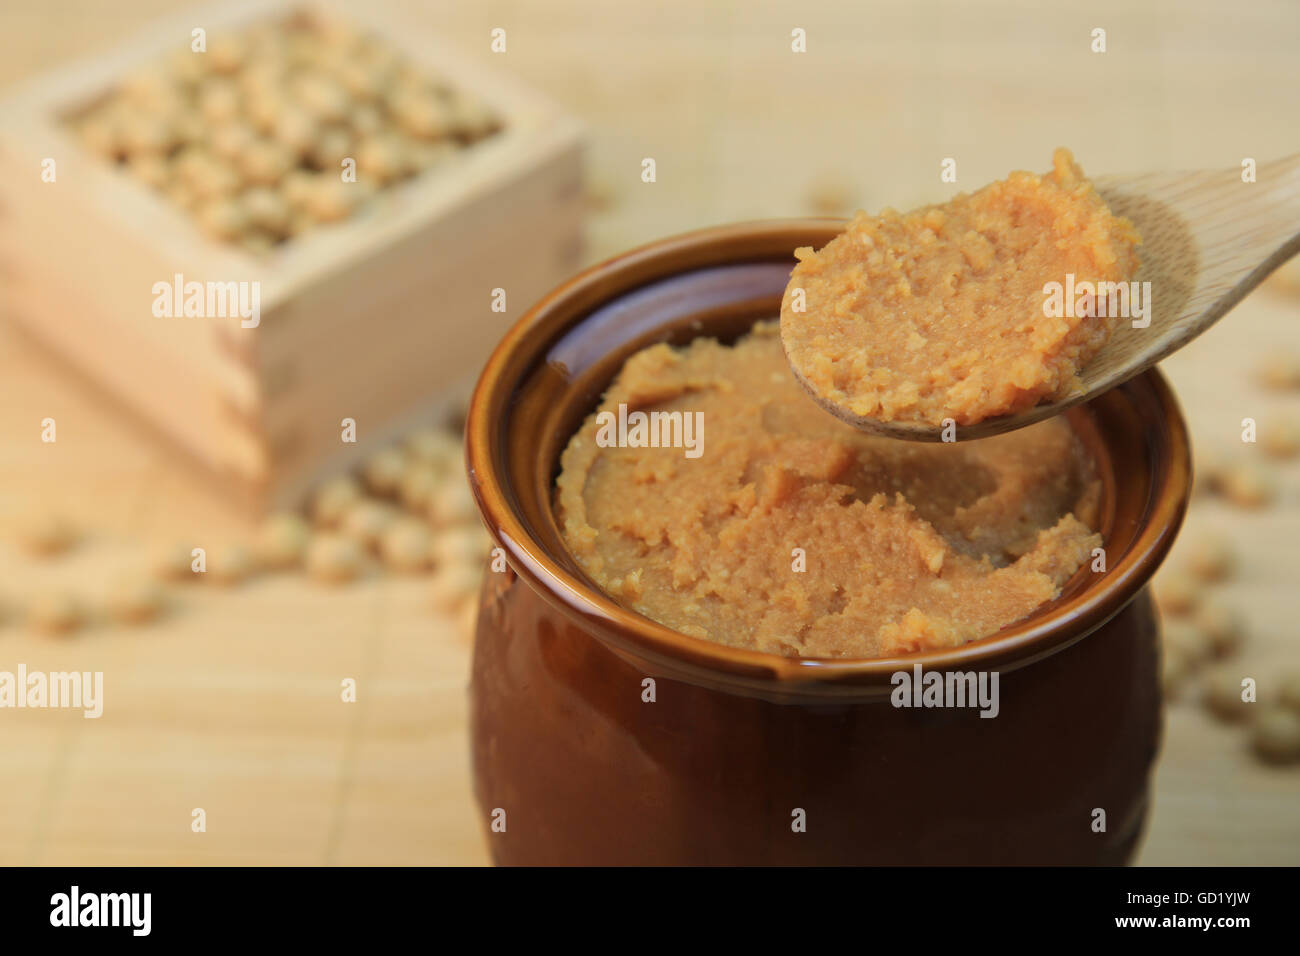 Miso(soybean paste) Stock Photo